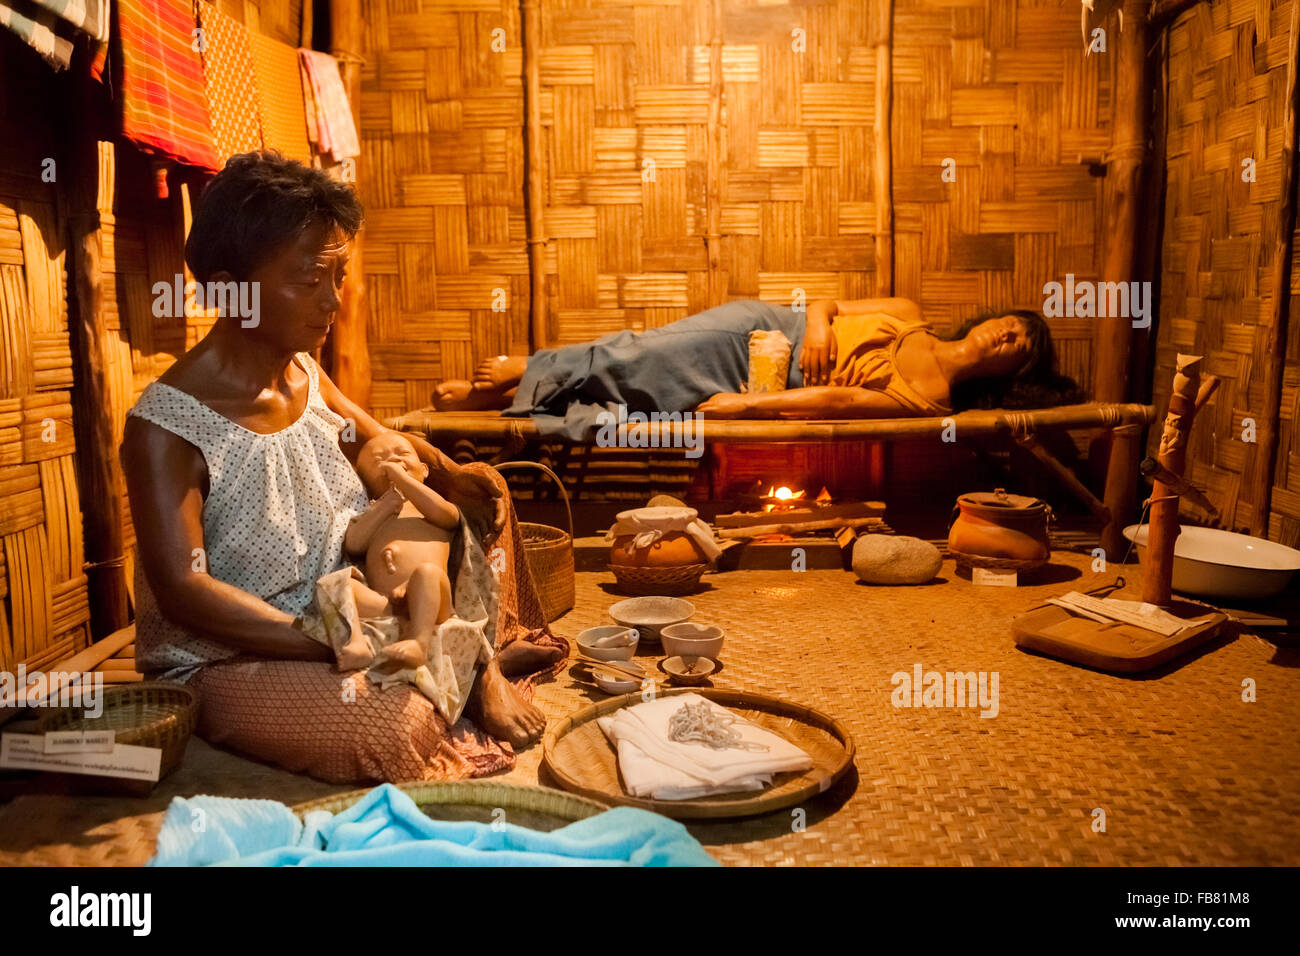 Diorama grandeur nature avec scène de l'accouchement. La mère se trouve avec foyer en dessous de lit en bambou pour garder son chaud. Banque D'Images